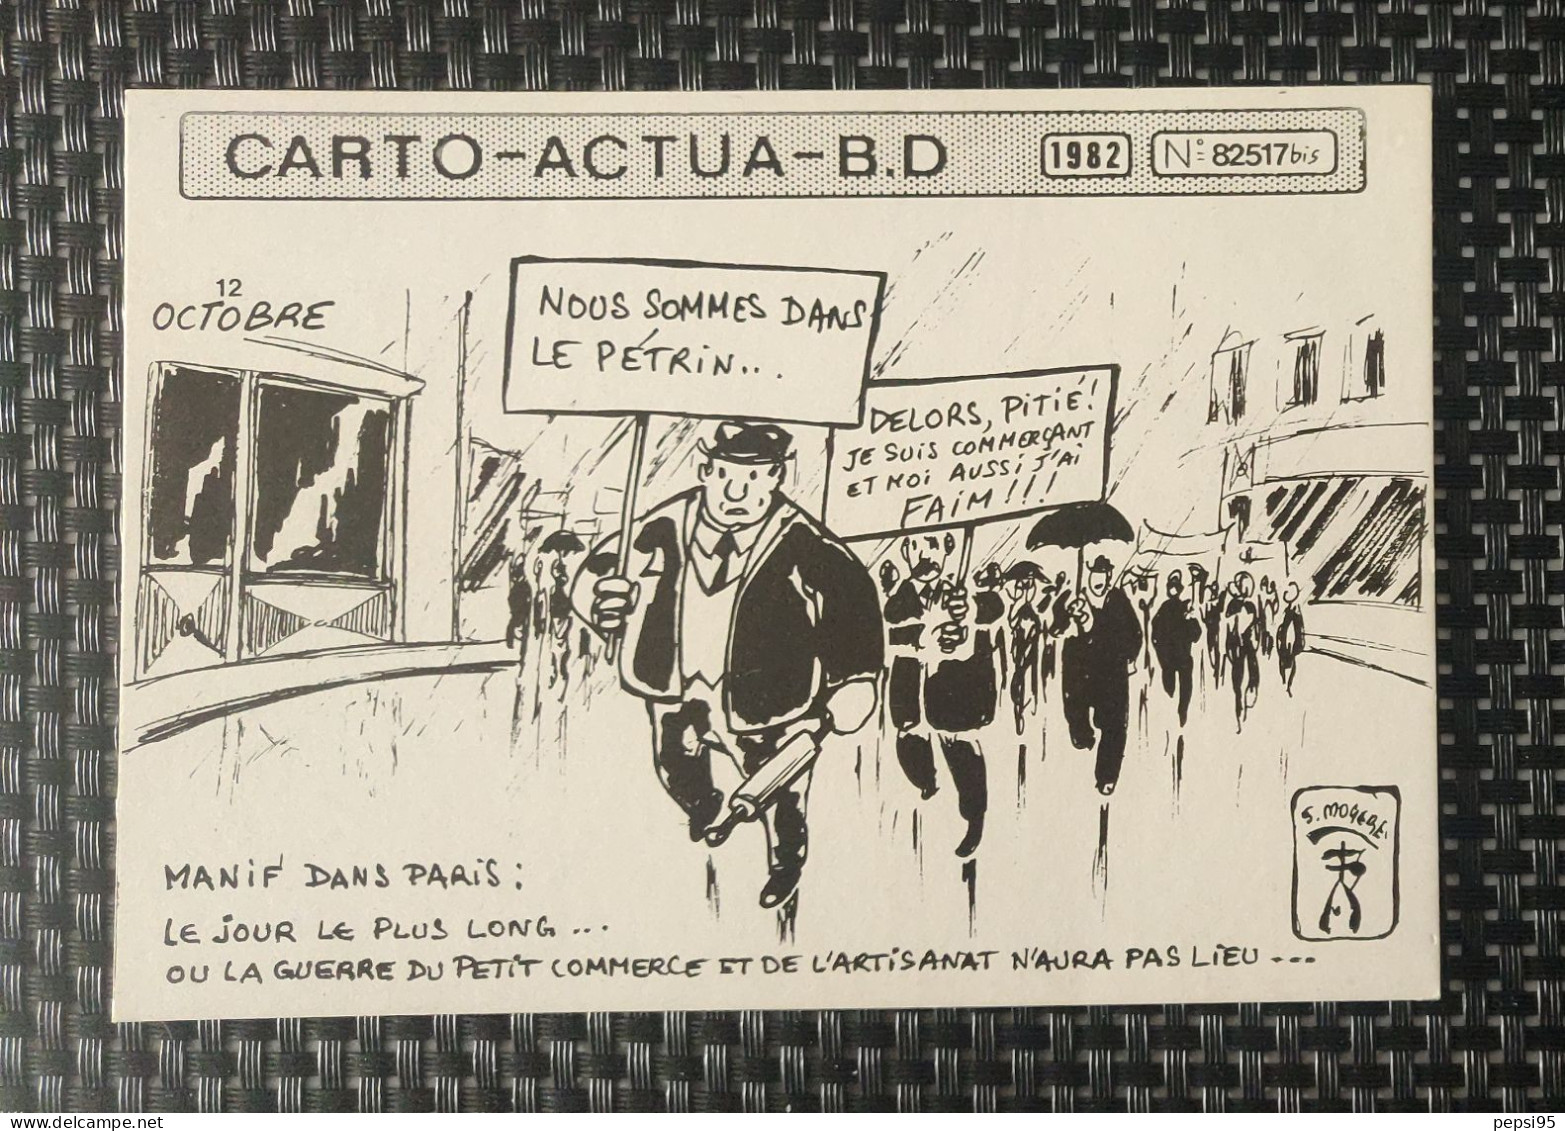 (CPI03) Carte Postale CARTO ACTUA B D N° 82517bis - 1982 - S. MOGERE - Nous Sommes Dans Le Pétrin - Stripverhalen